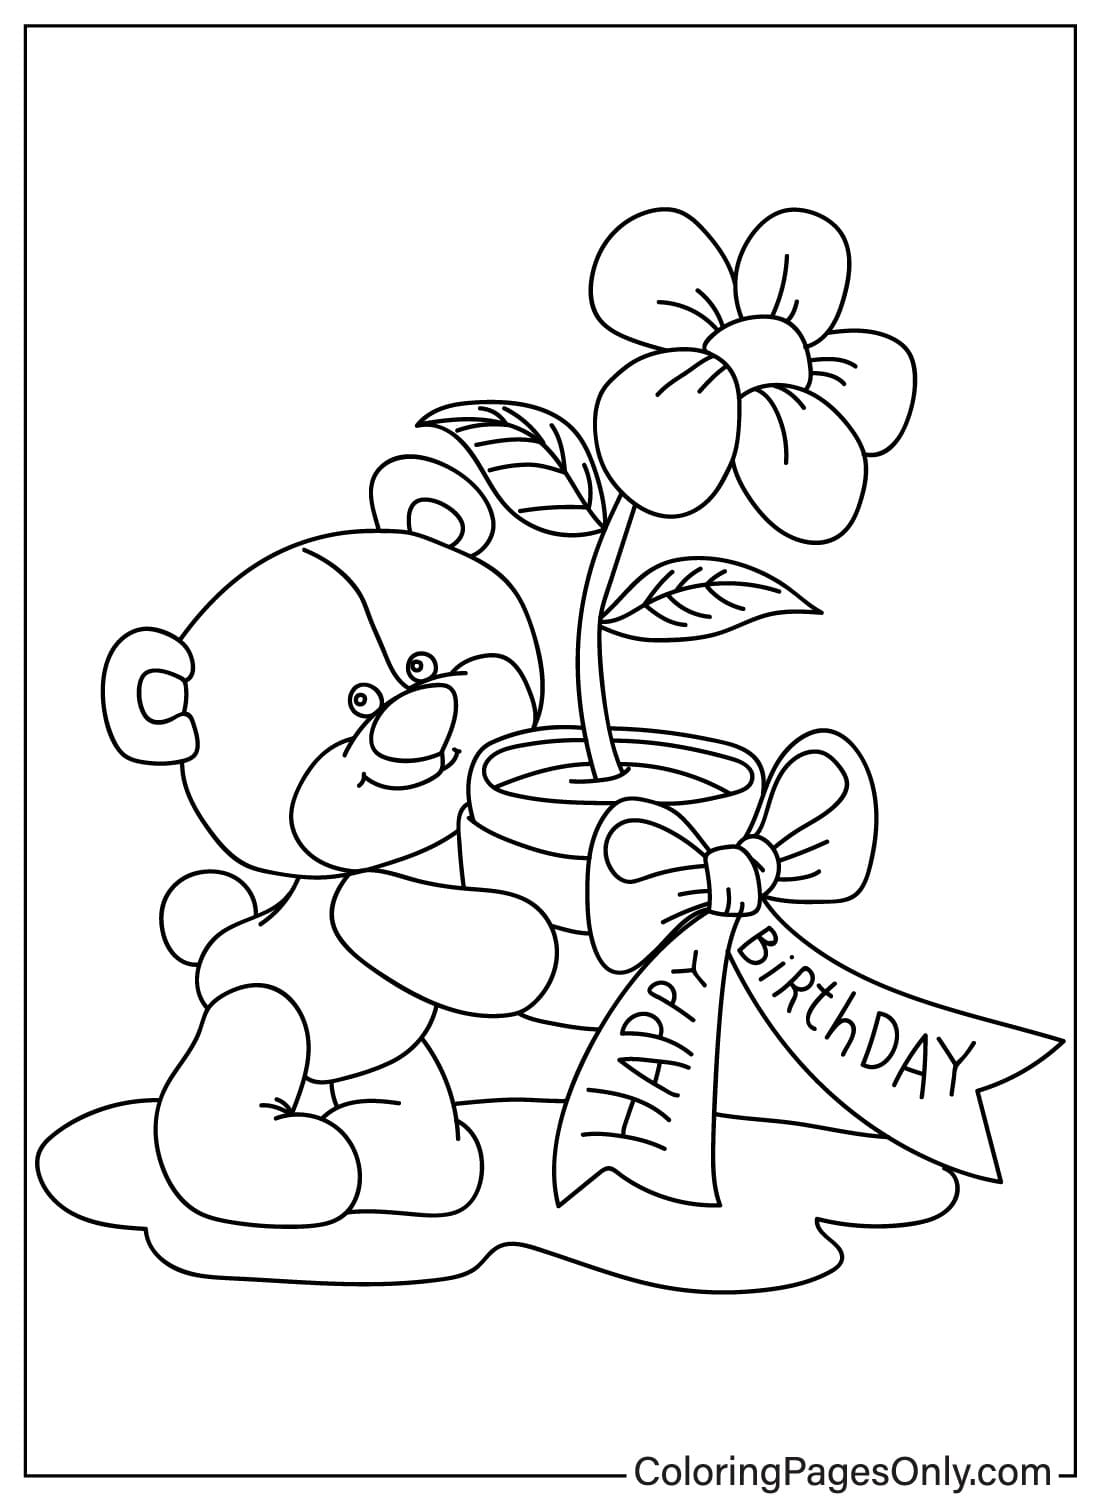 Página para colorir para impressão gratuita do Teddy Bear da Teddy Bear